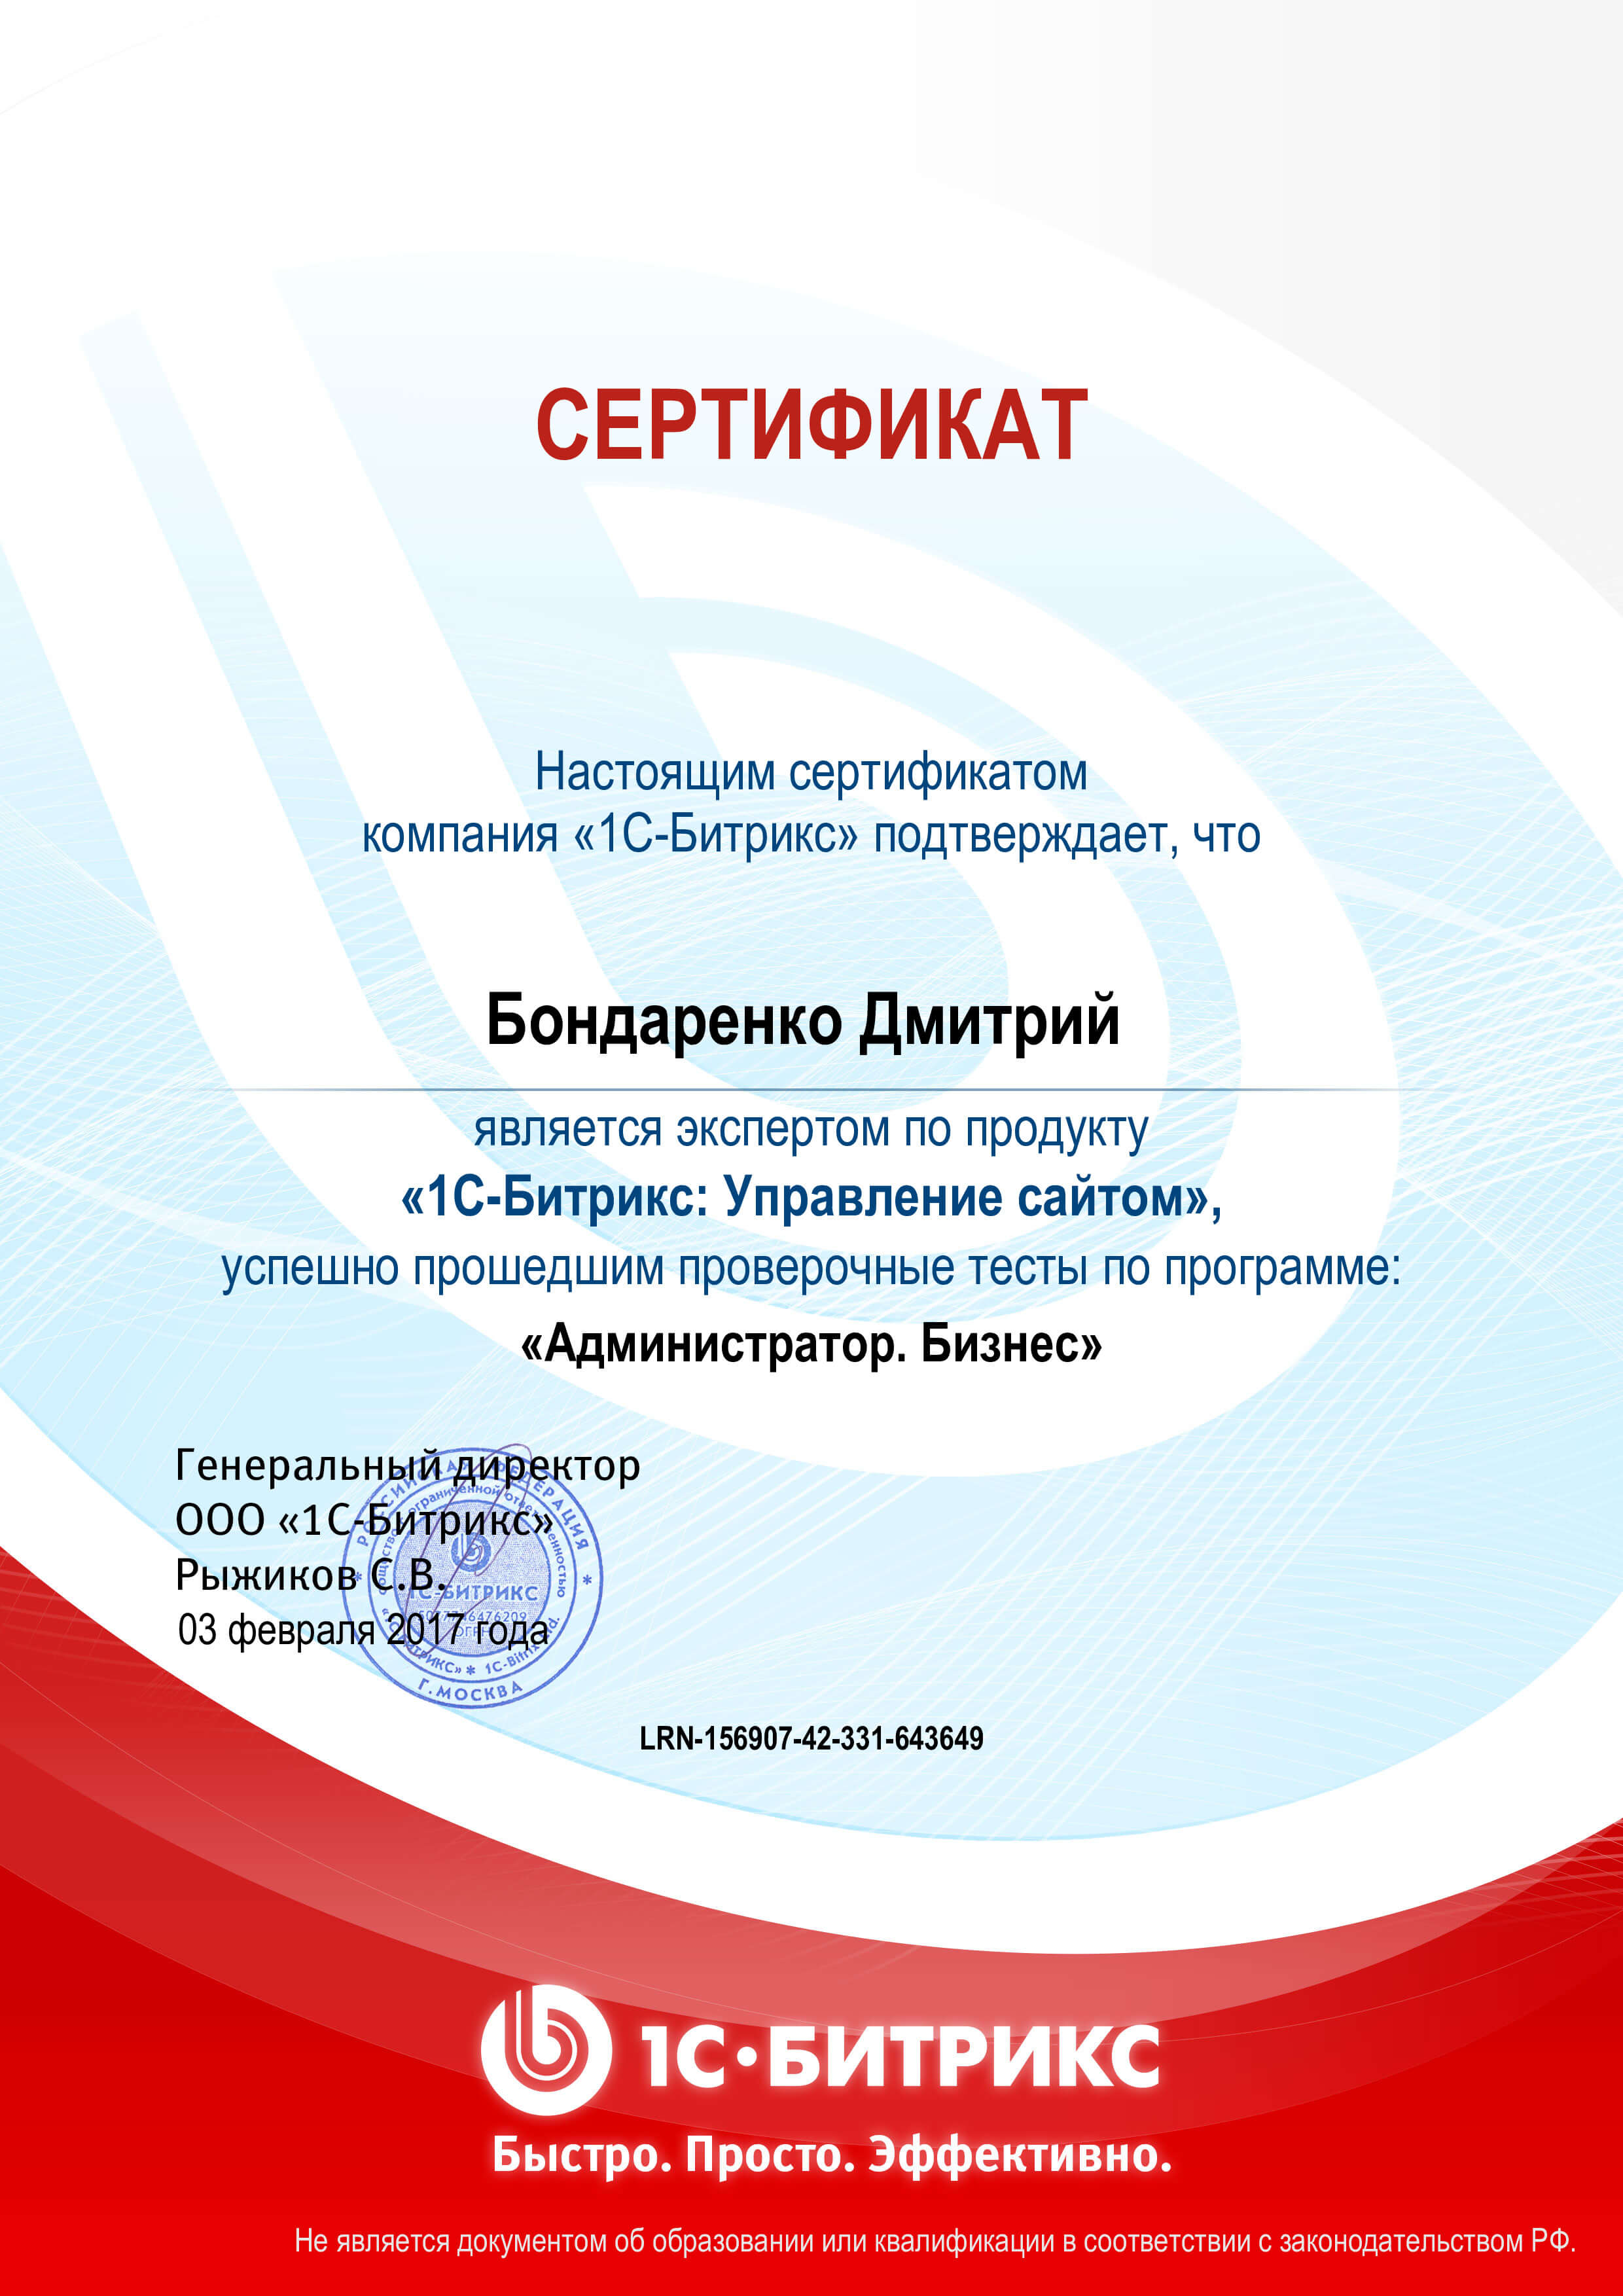 Сертификат “Админимтратор”